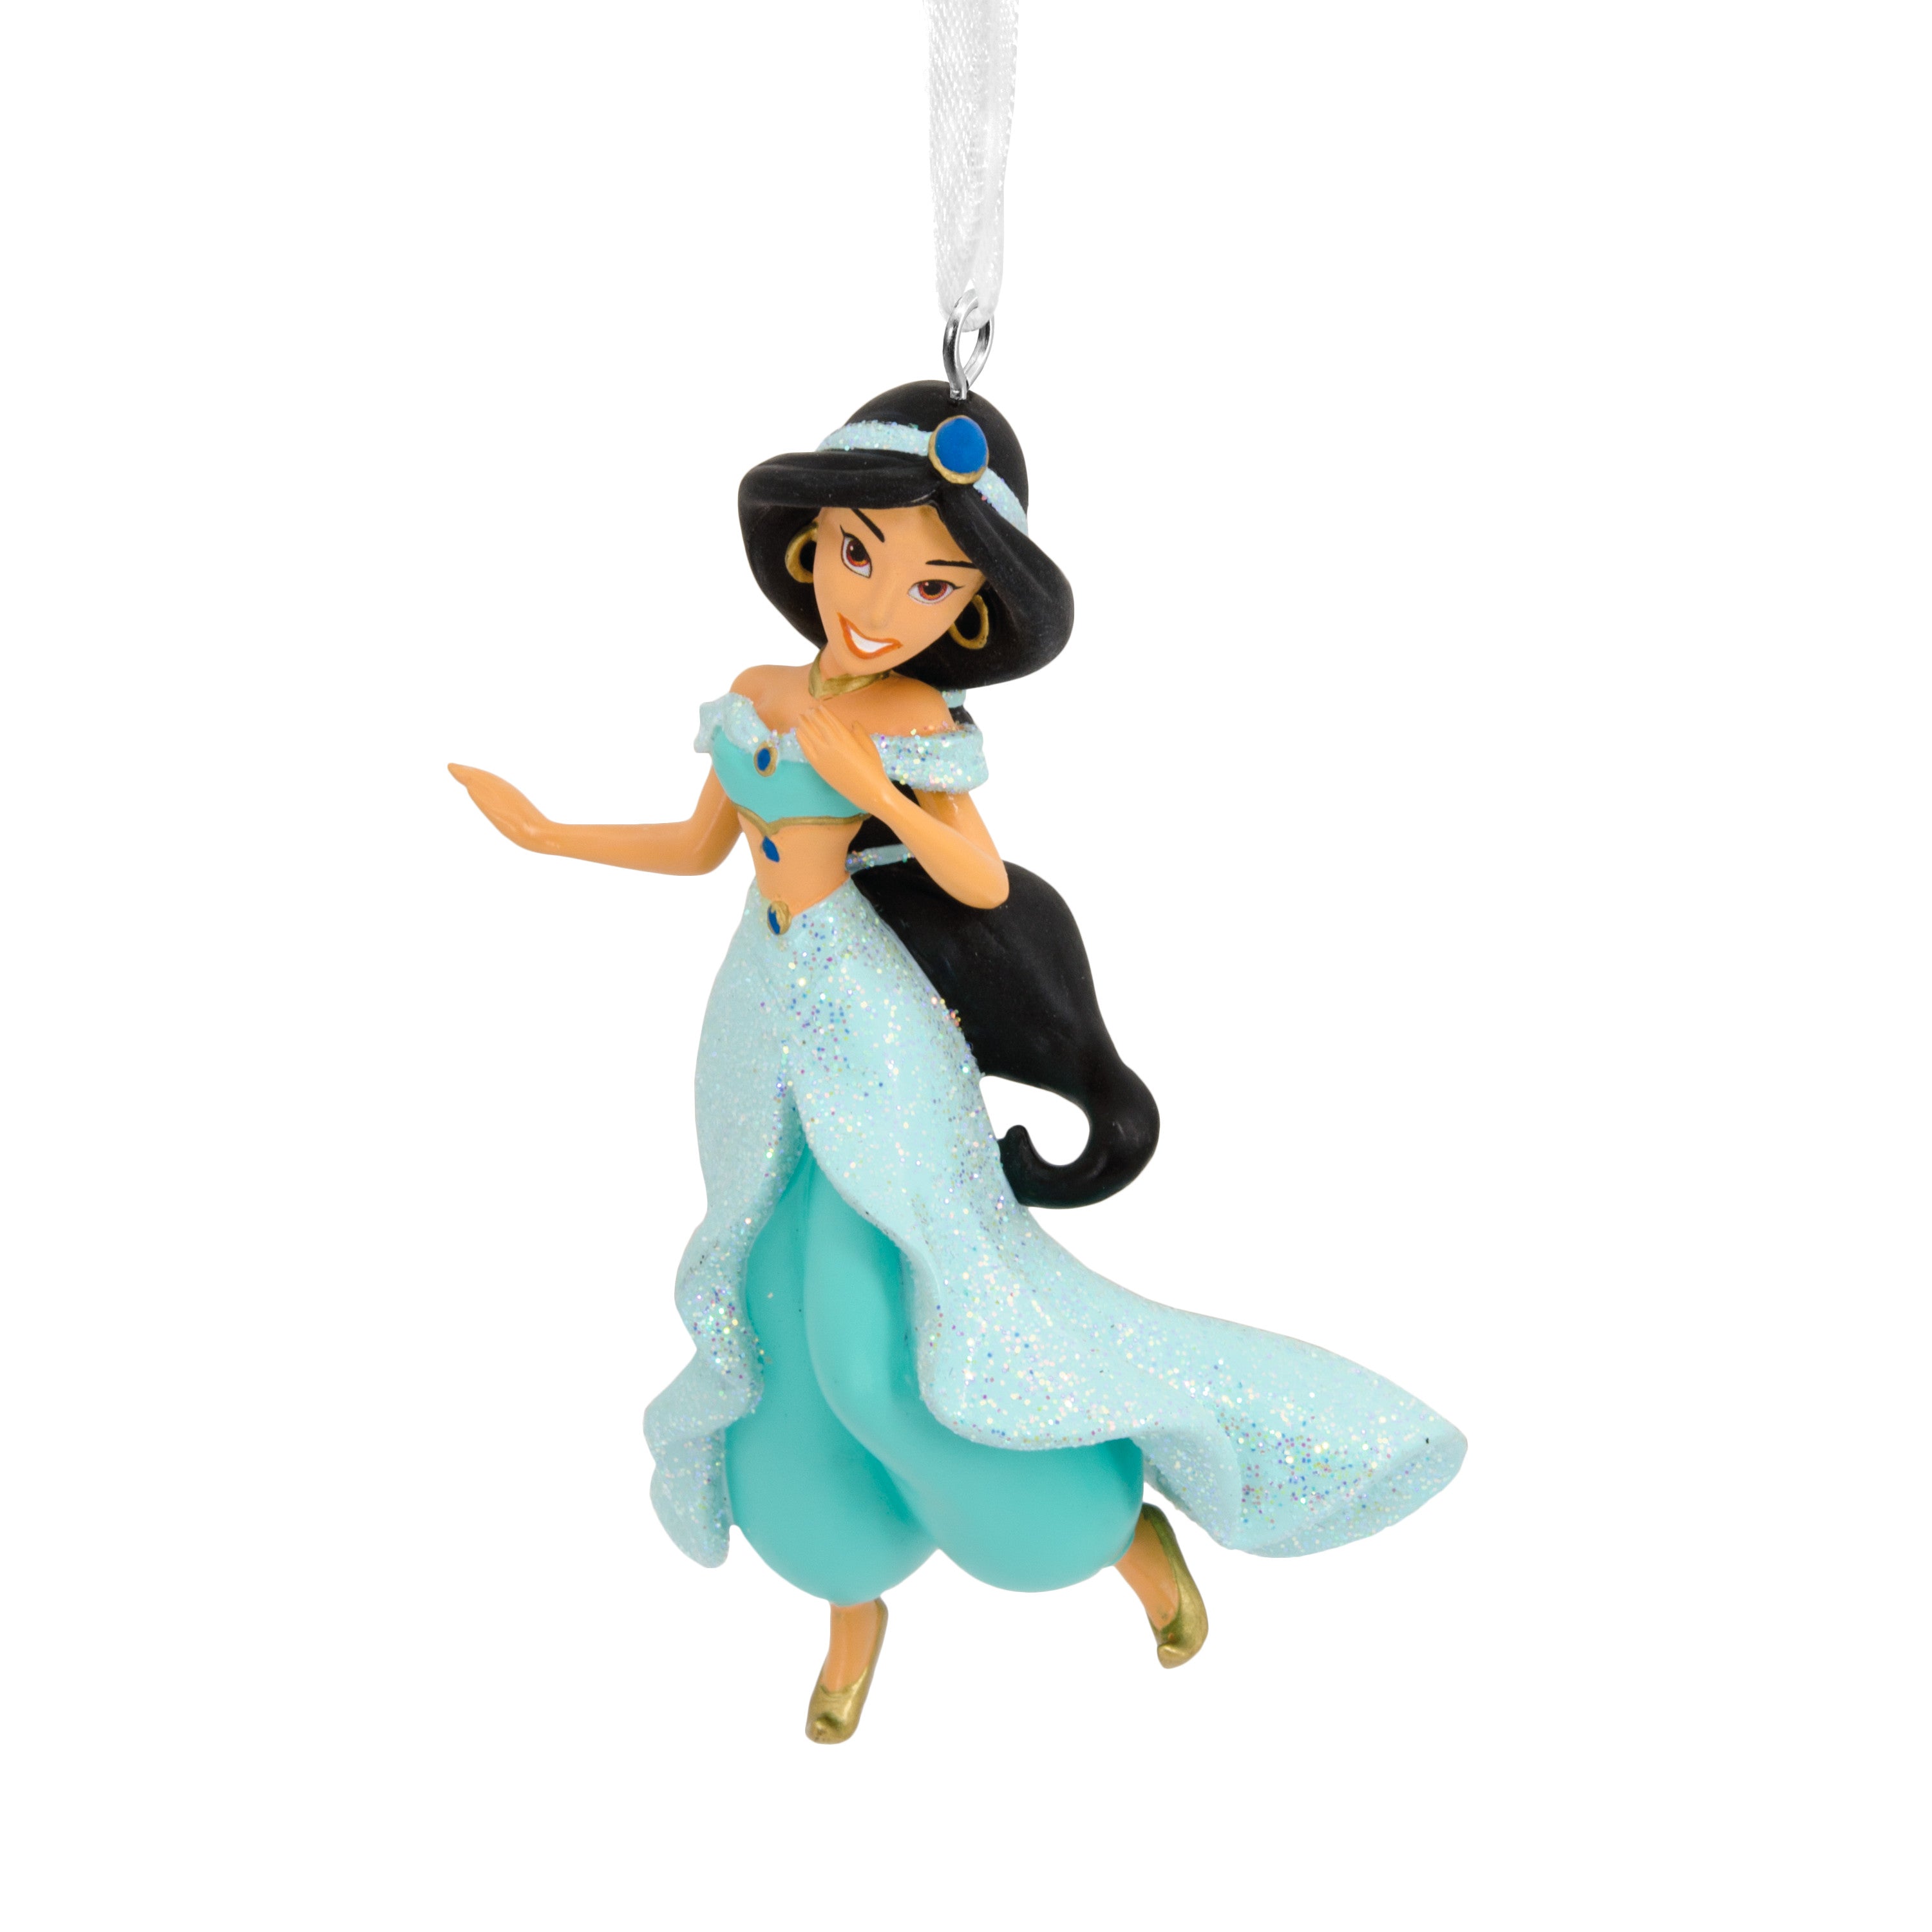 Hallmark Ornament (Disney The Princess and The Frog Tiana with Frog Prince Naveen)